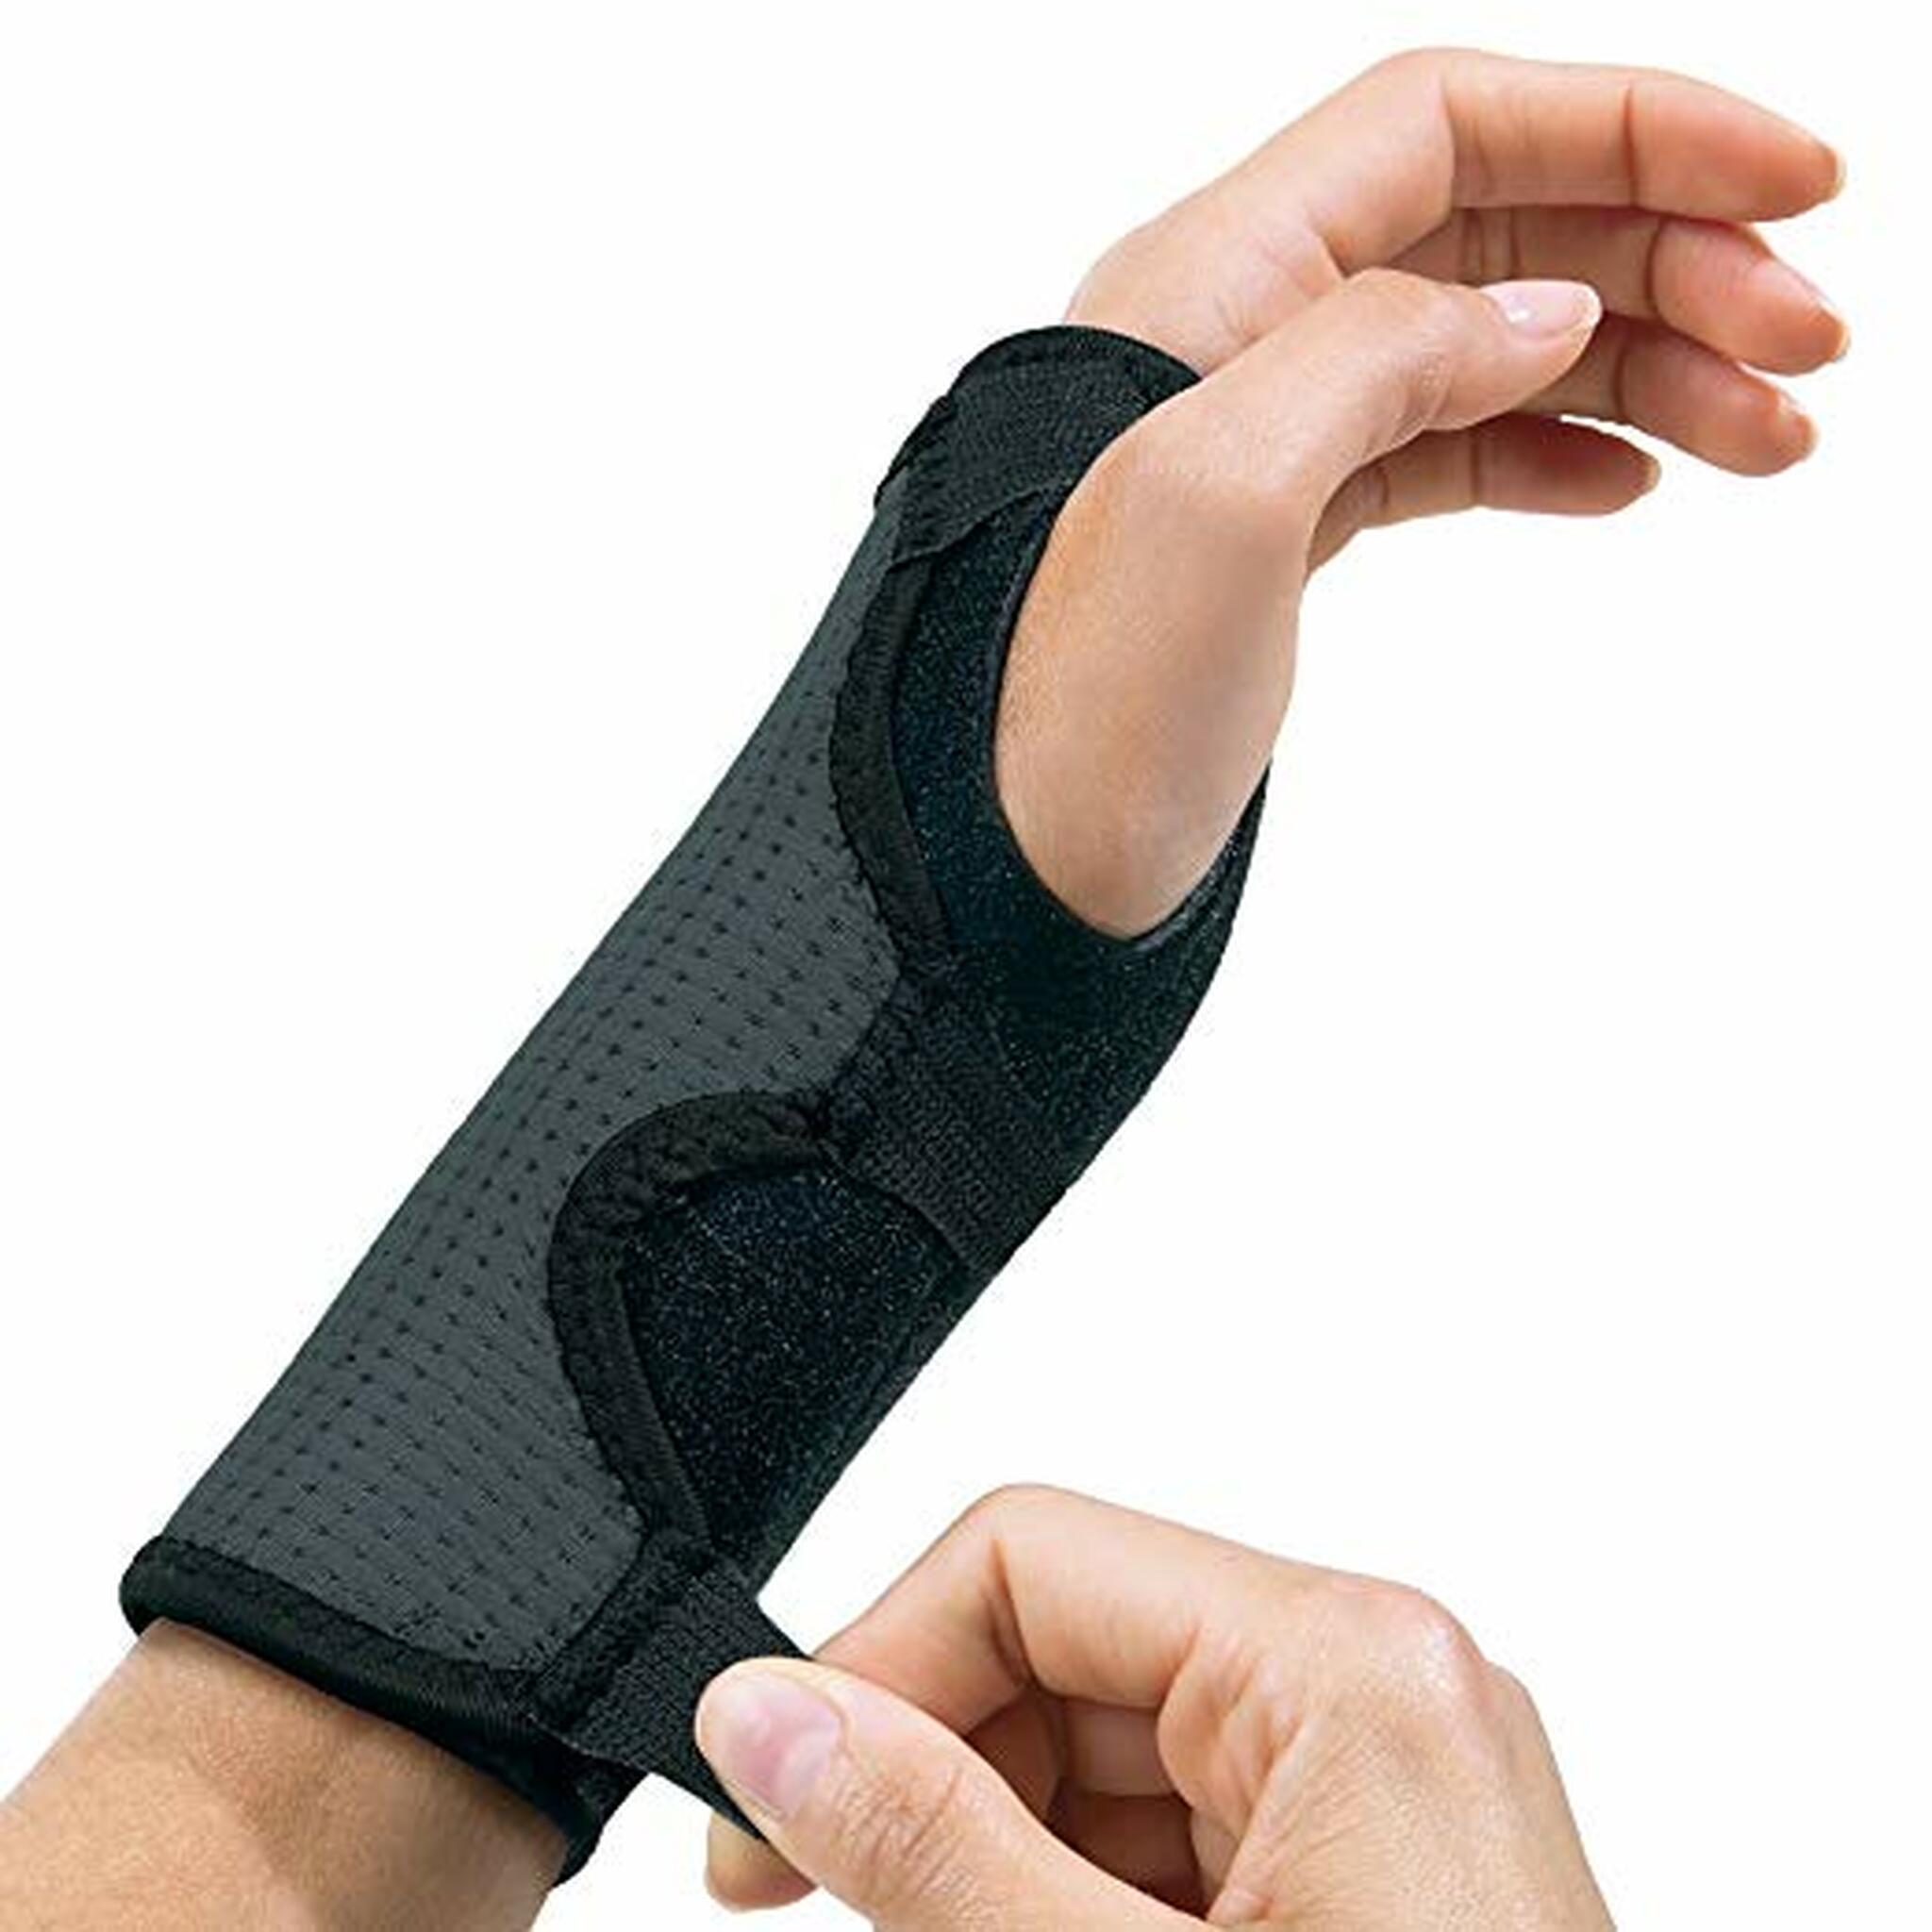 Futuro Reversible Splint Wrist Brace